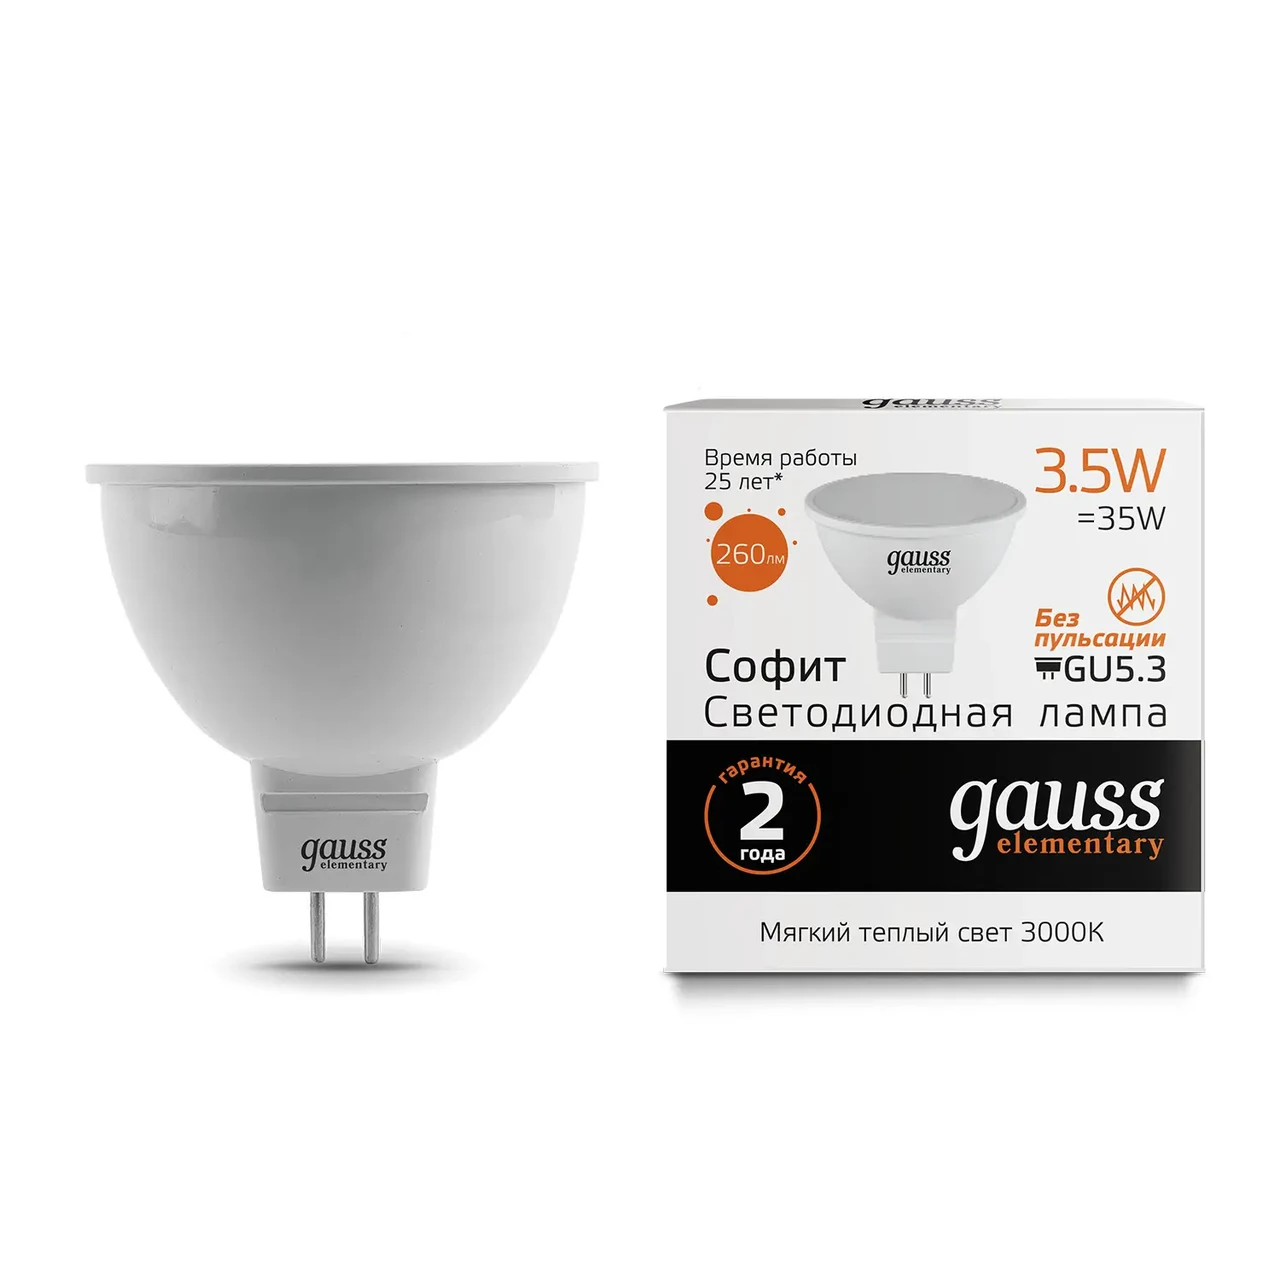 Лампа Gauss Elementary MR16 3.5W 290lm 3000K GU5.3 LED 1/10/100, фото 1